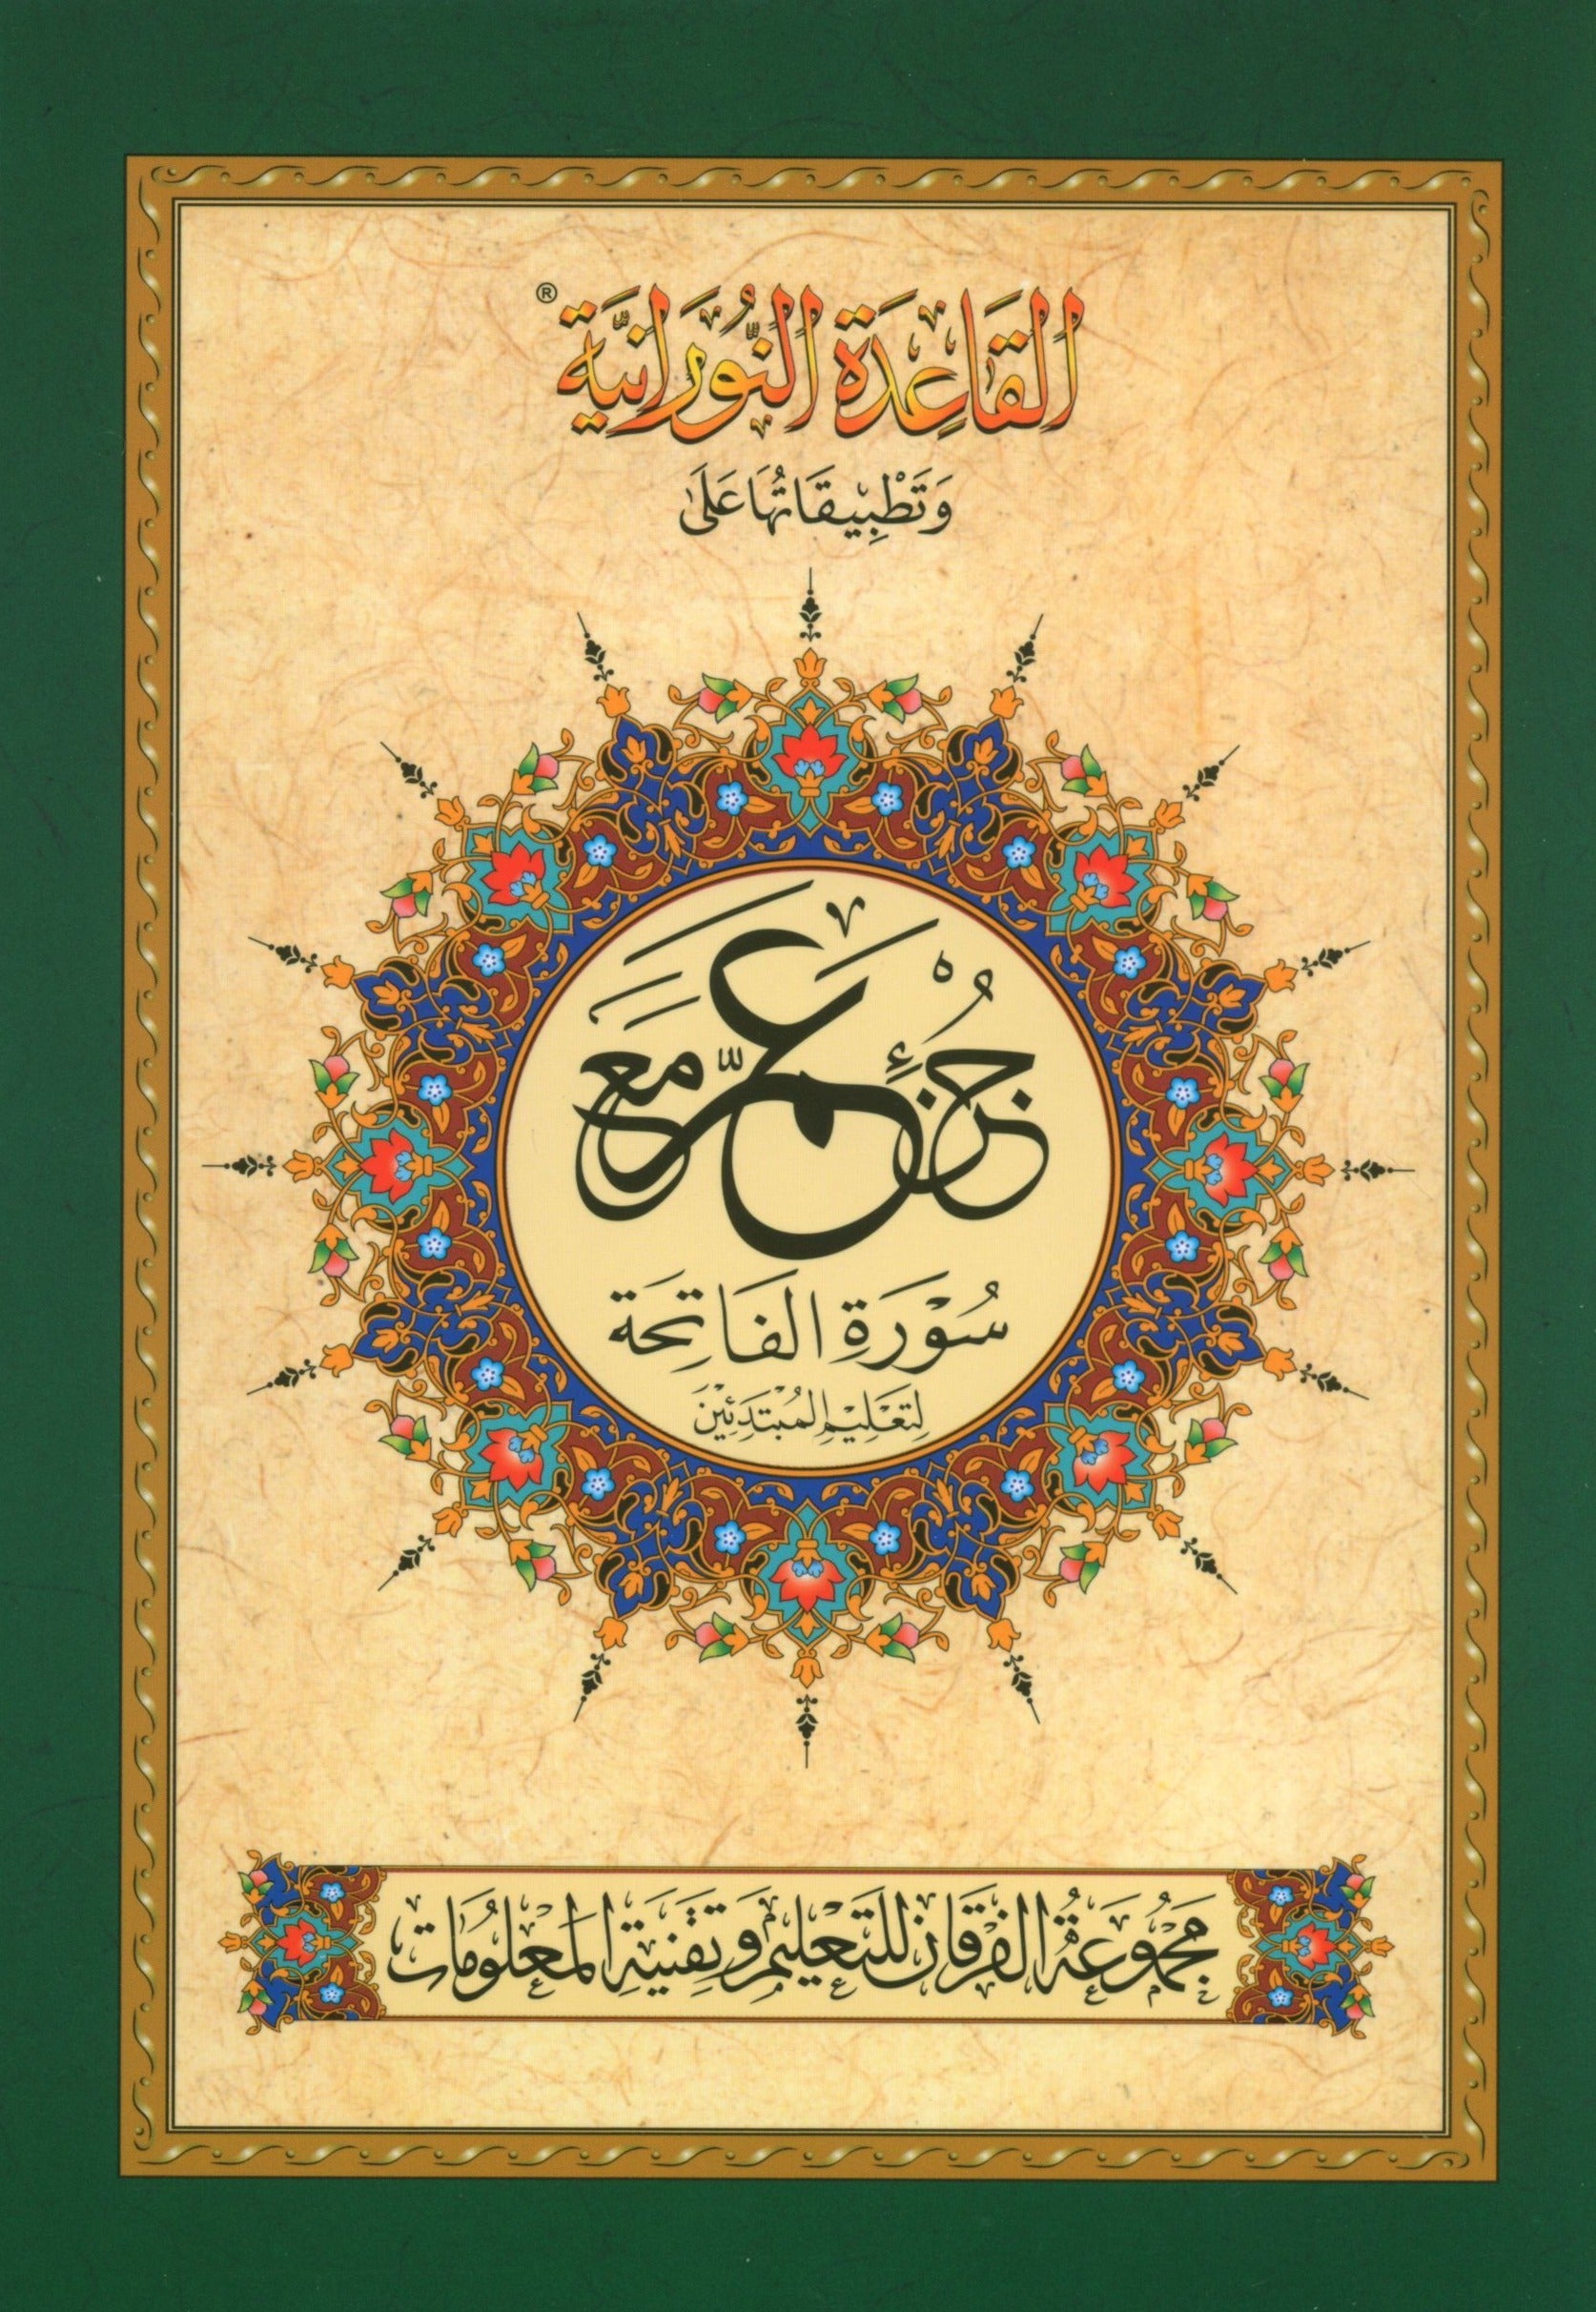 Al-Qaidah An-Noraniah - Juz’ Amma & Suratul-Fatihah for Beginners Small Size 5 x 8 with Urdu Script جزء عم مع سورة الفاتحة للمبتدئين